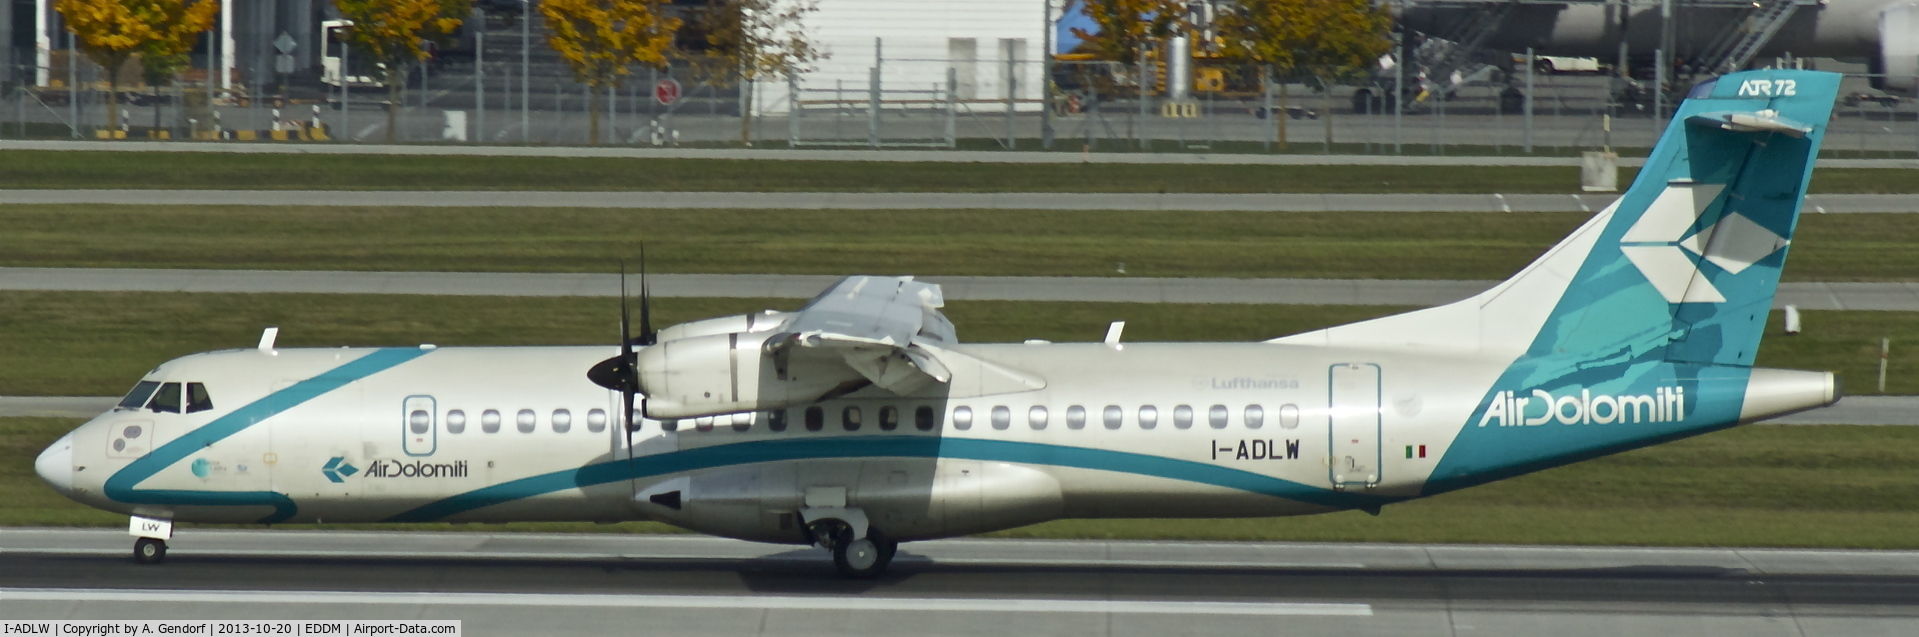 I-ADLW, 2004 ATR 72-212A C/N 707, Air Dolomiti, is here on RWY 26L at München(EDDM)